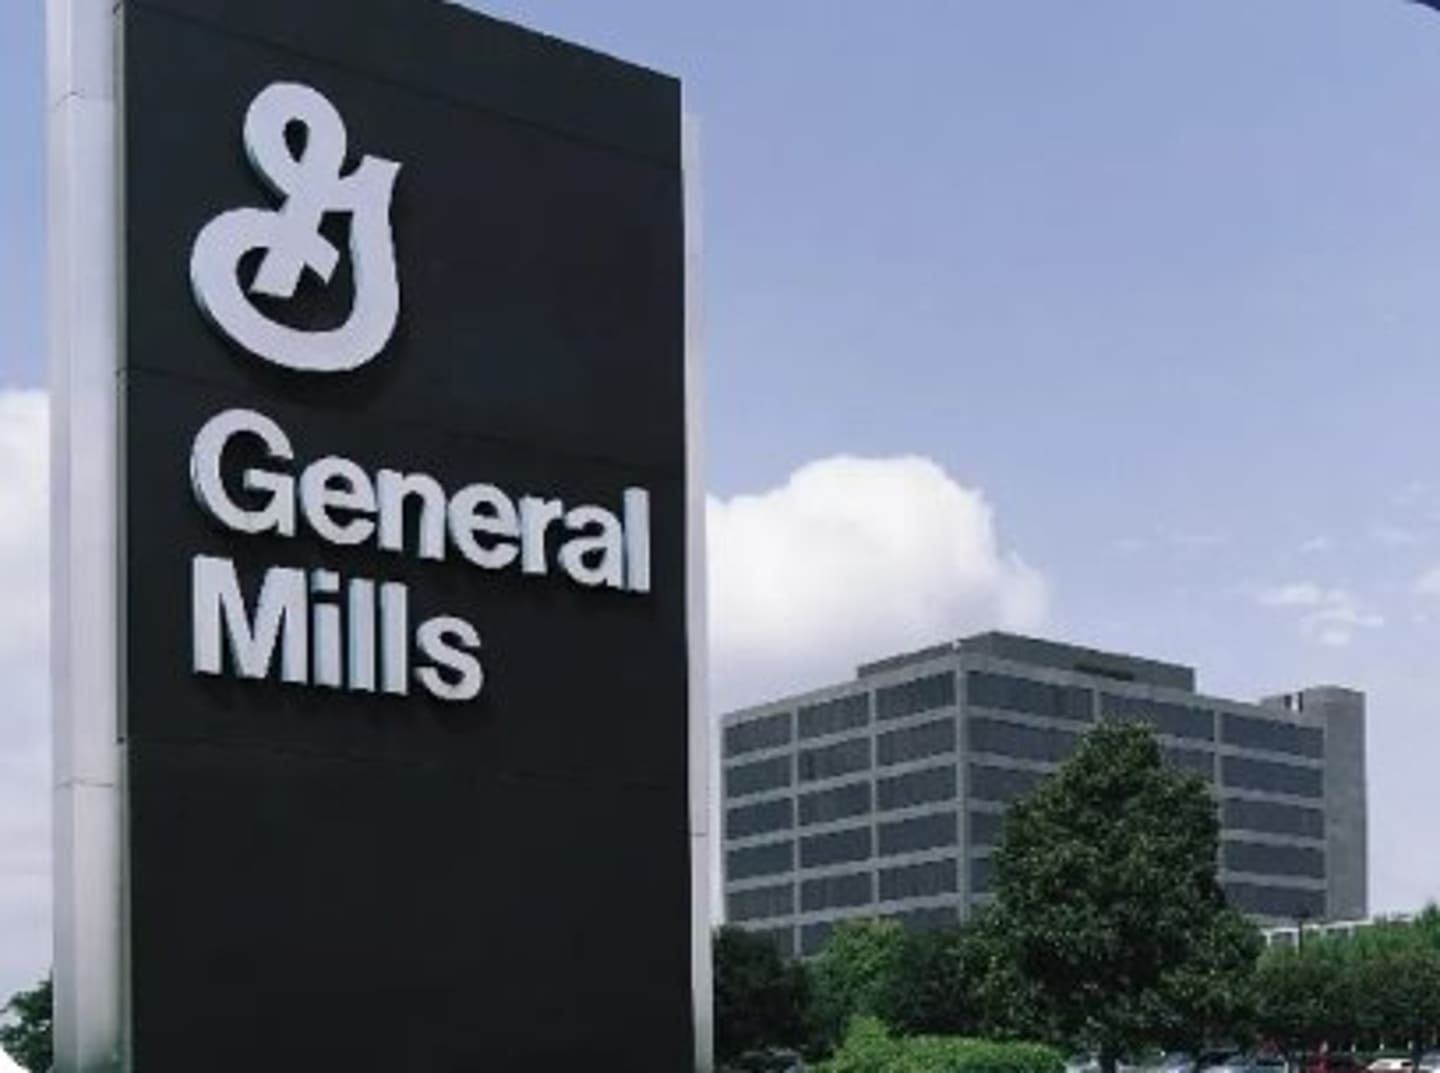 General Mills at Brazil